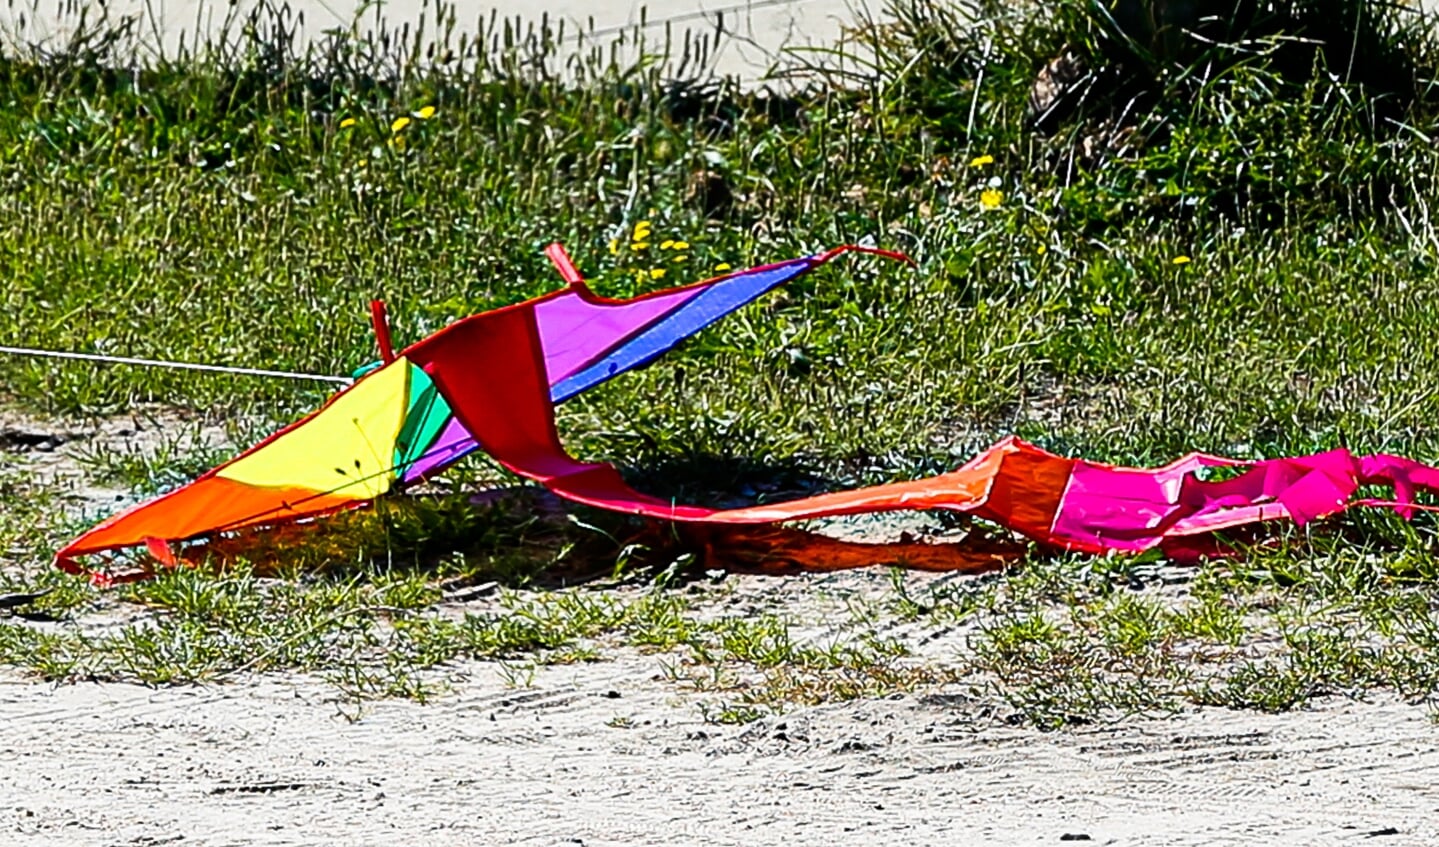 Mede door de zwakke wind viel het niet altijd mee de vlieger in het luchtruim te houden.